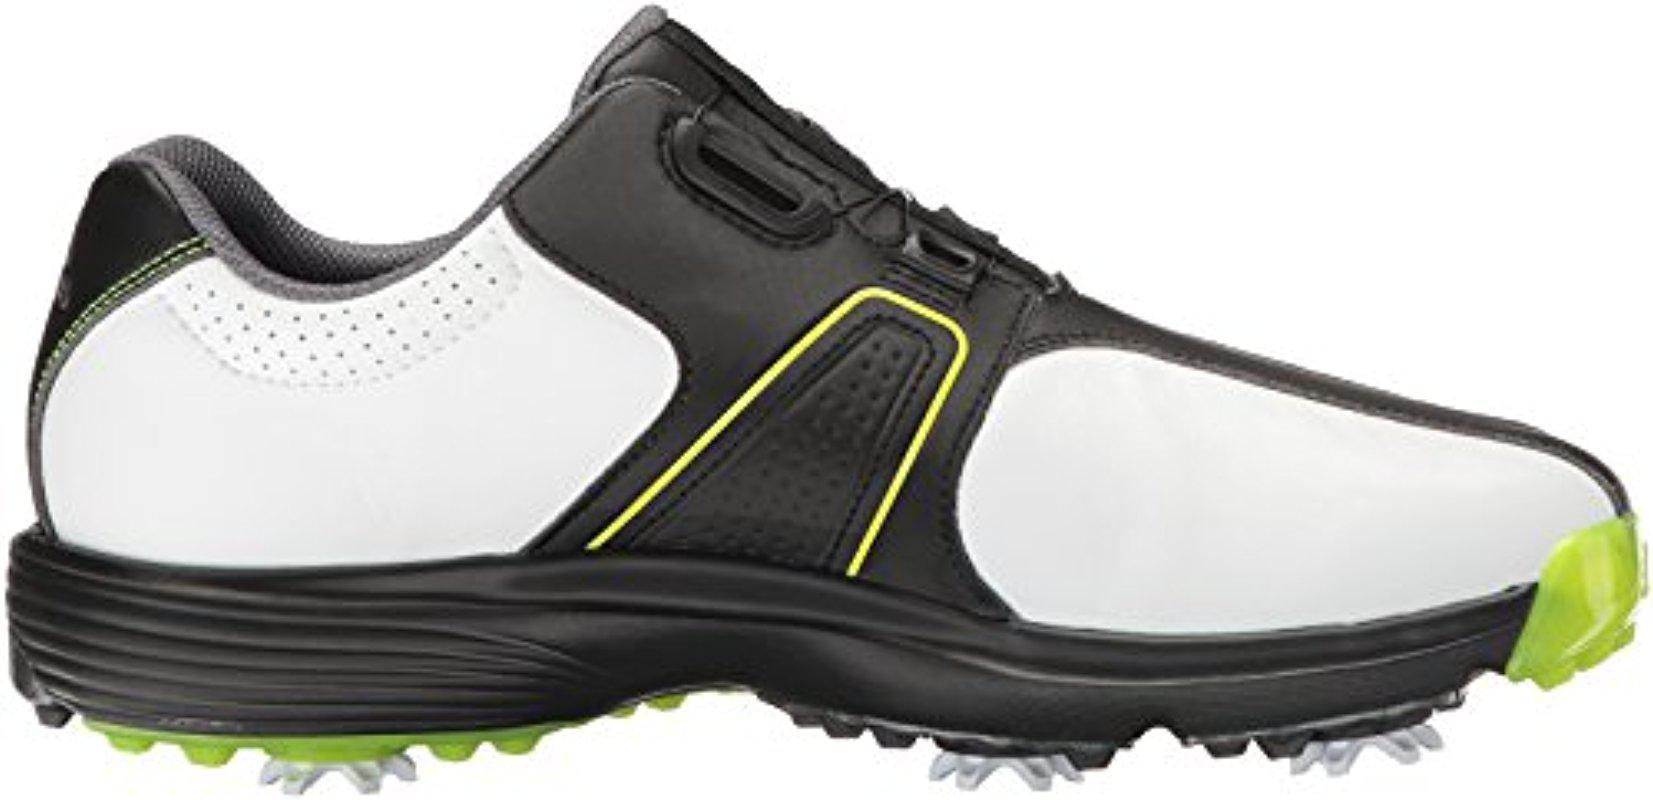 adidas 360 Traxion Boa Wd Cblack Golf Shoe for Men - Lyst